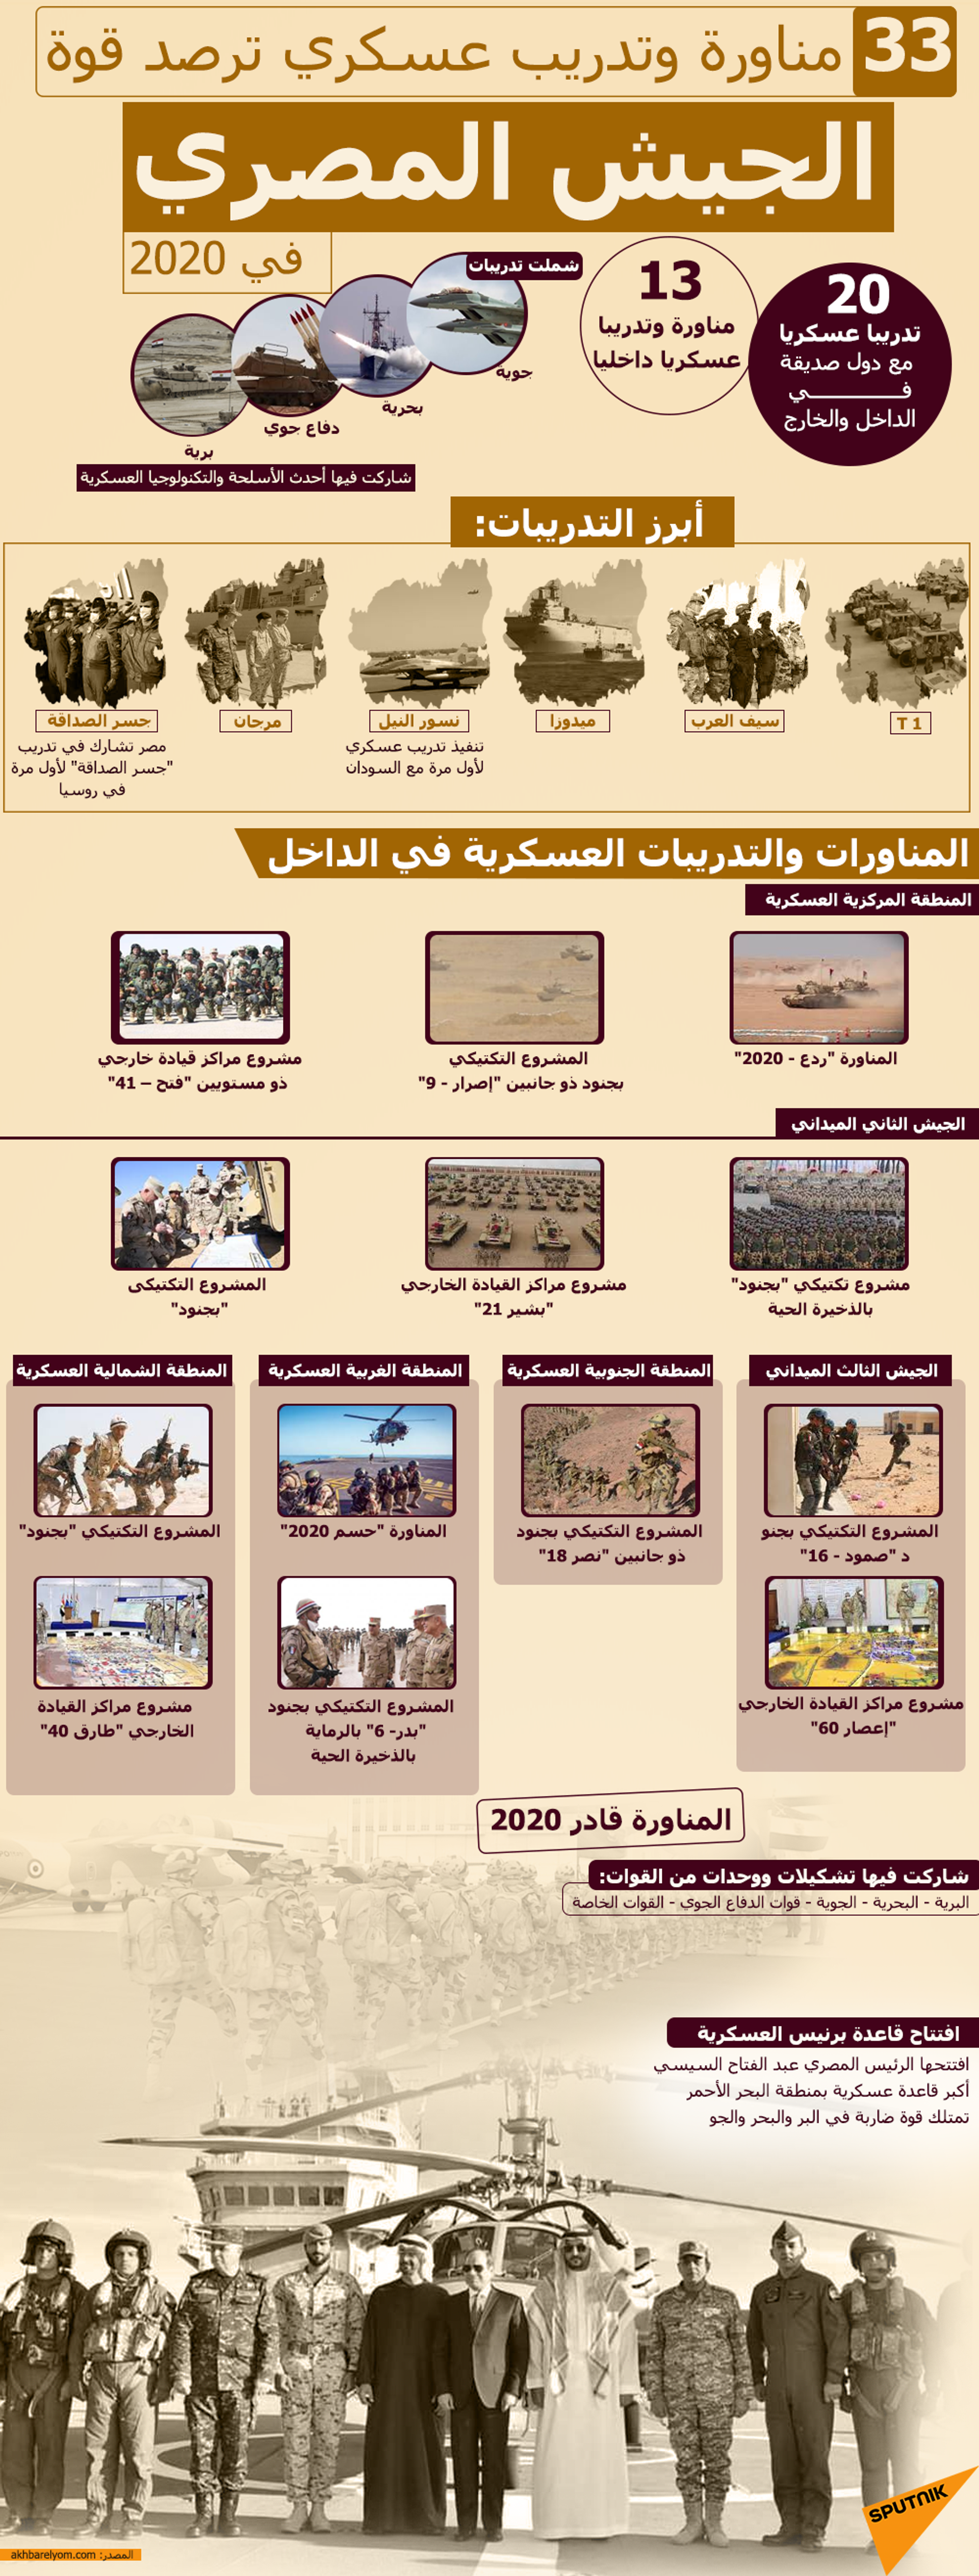 33 مناورة وتدريب عسكري ترصد قوة الجيش المصري في 2020 - سبوتنيك عربي, 1920, 04.12.2022